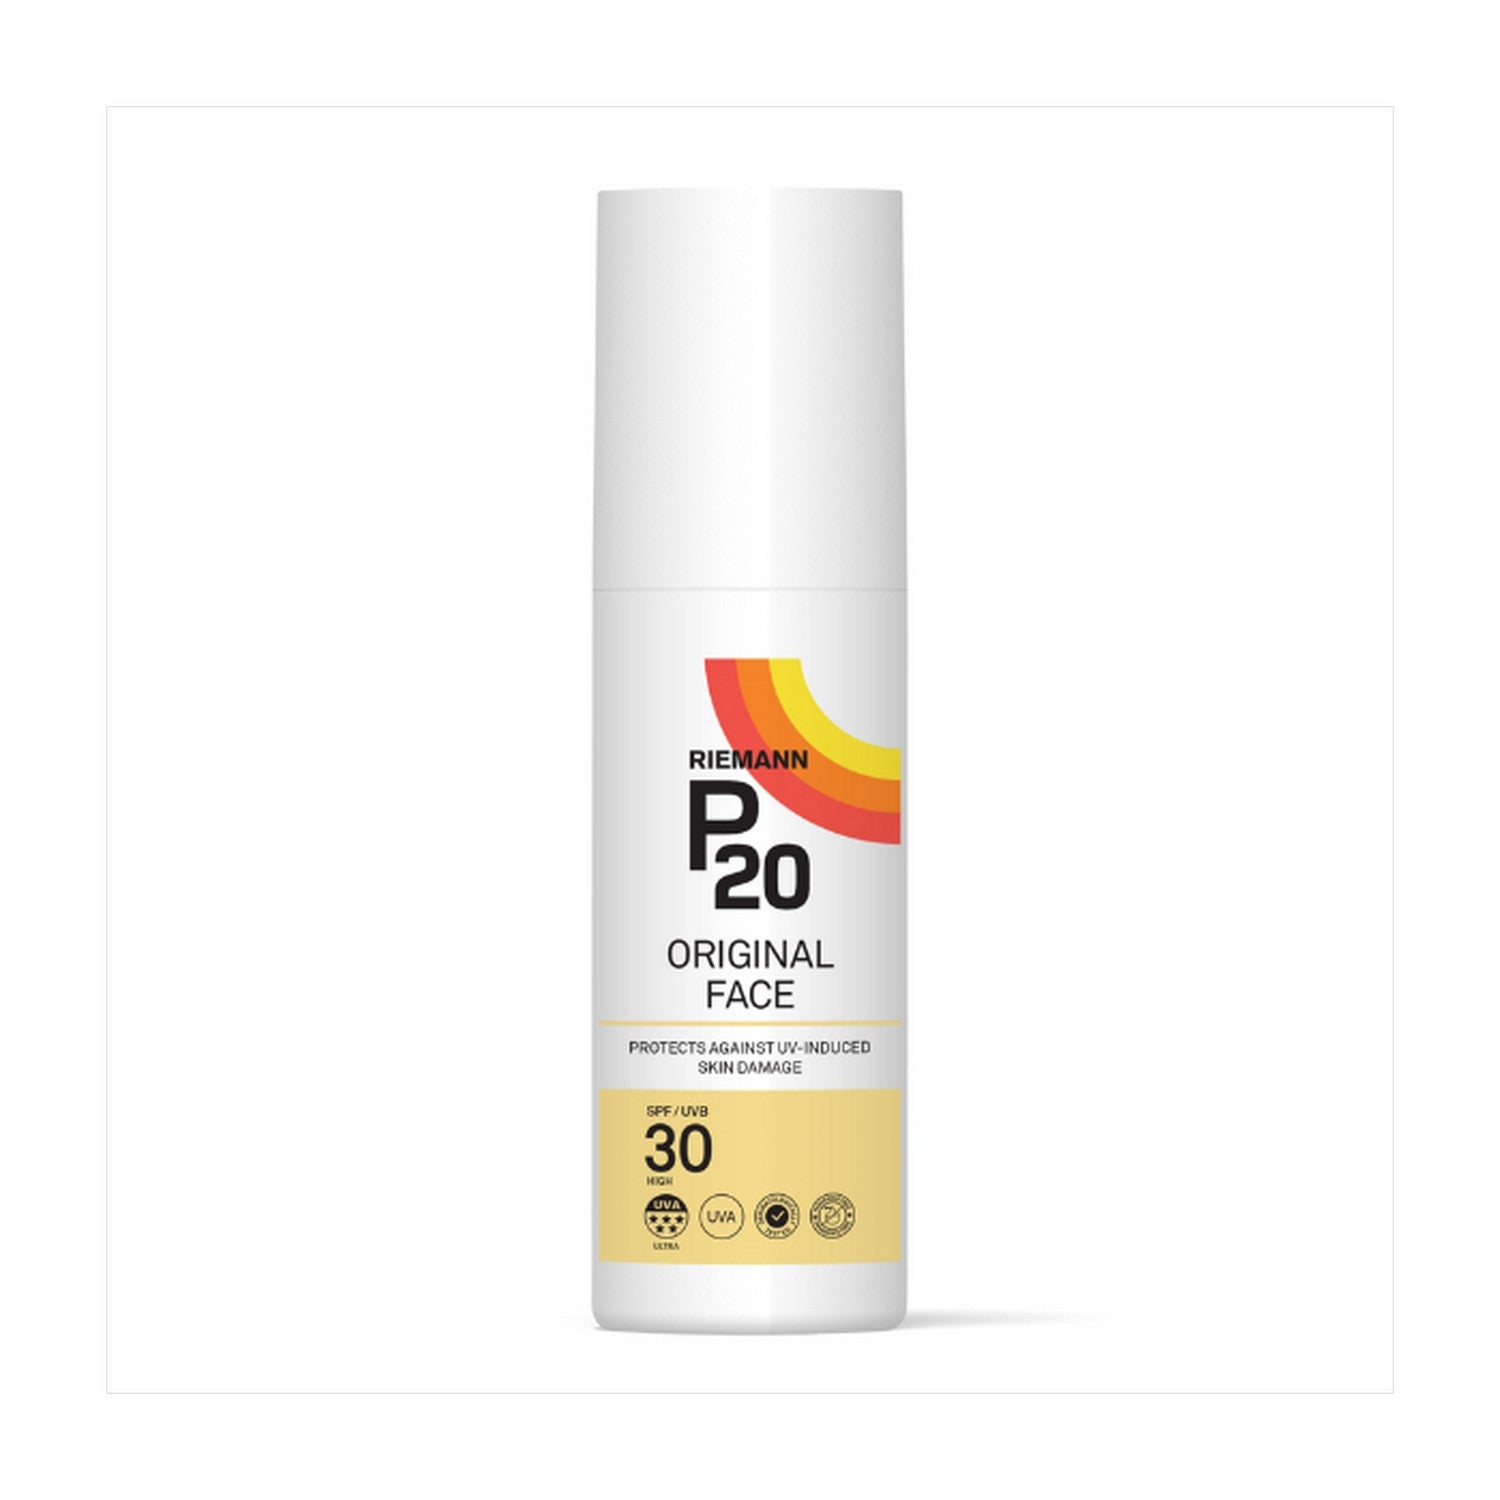 P20 Sun Protection Original Face SPF30 50G